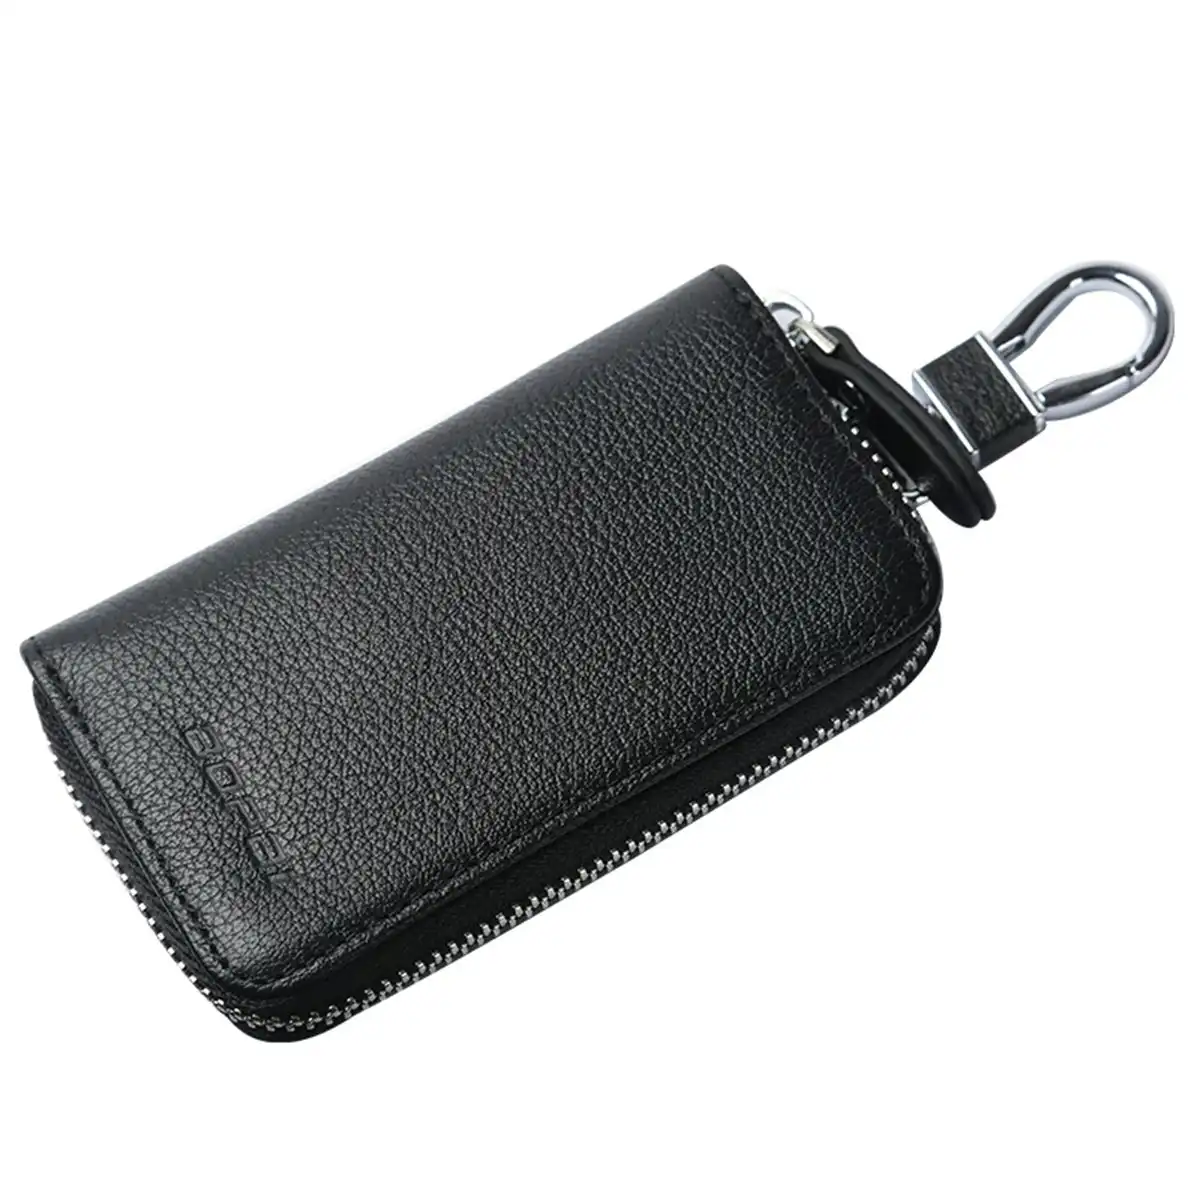 Bopai Luxury Style Genuine Leather Wallet Car Key Holder Keys Organizer Bag Keychain Pouch B7221